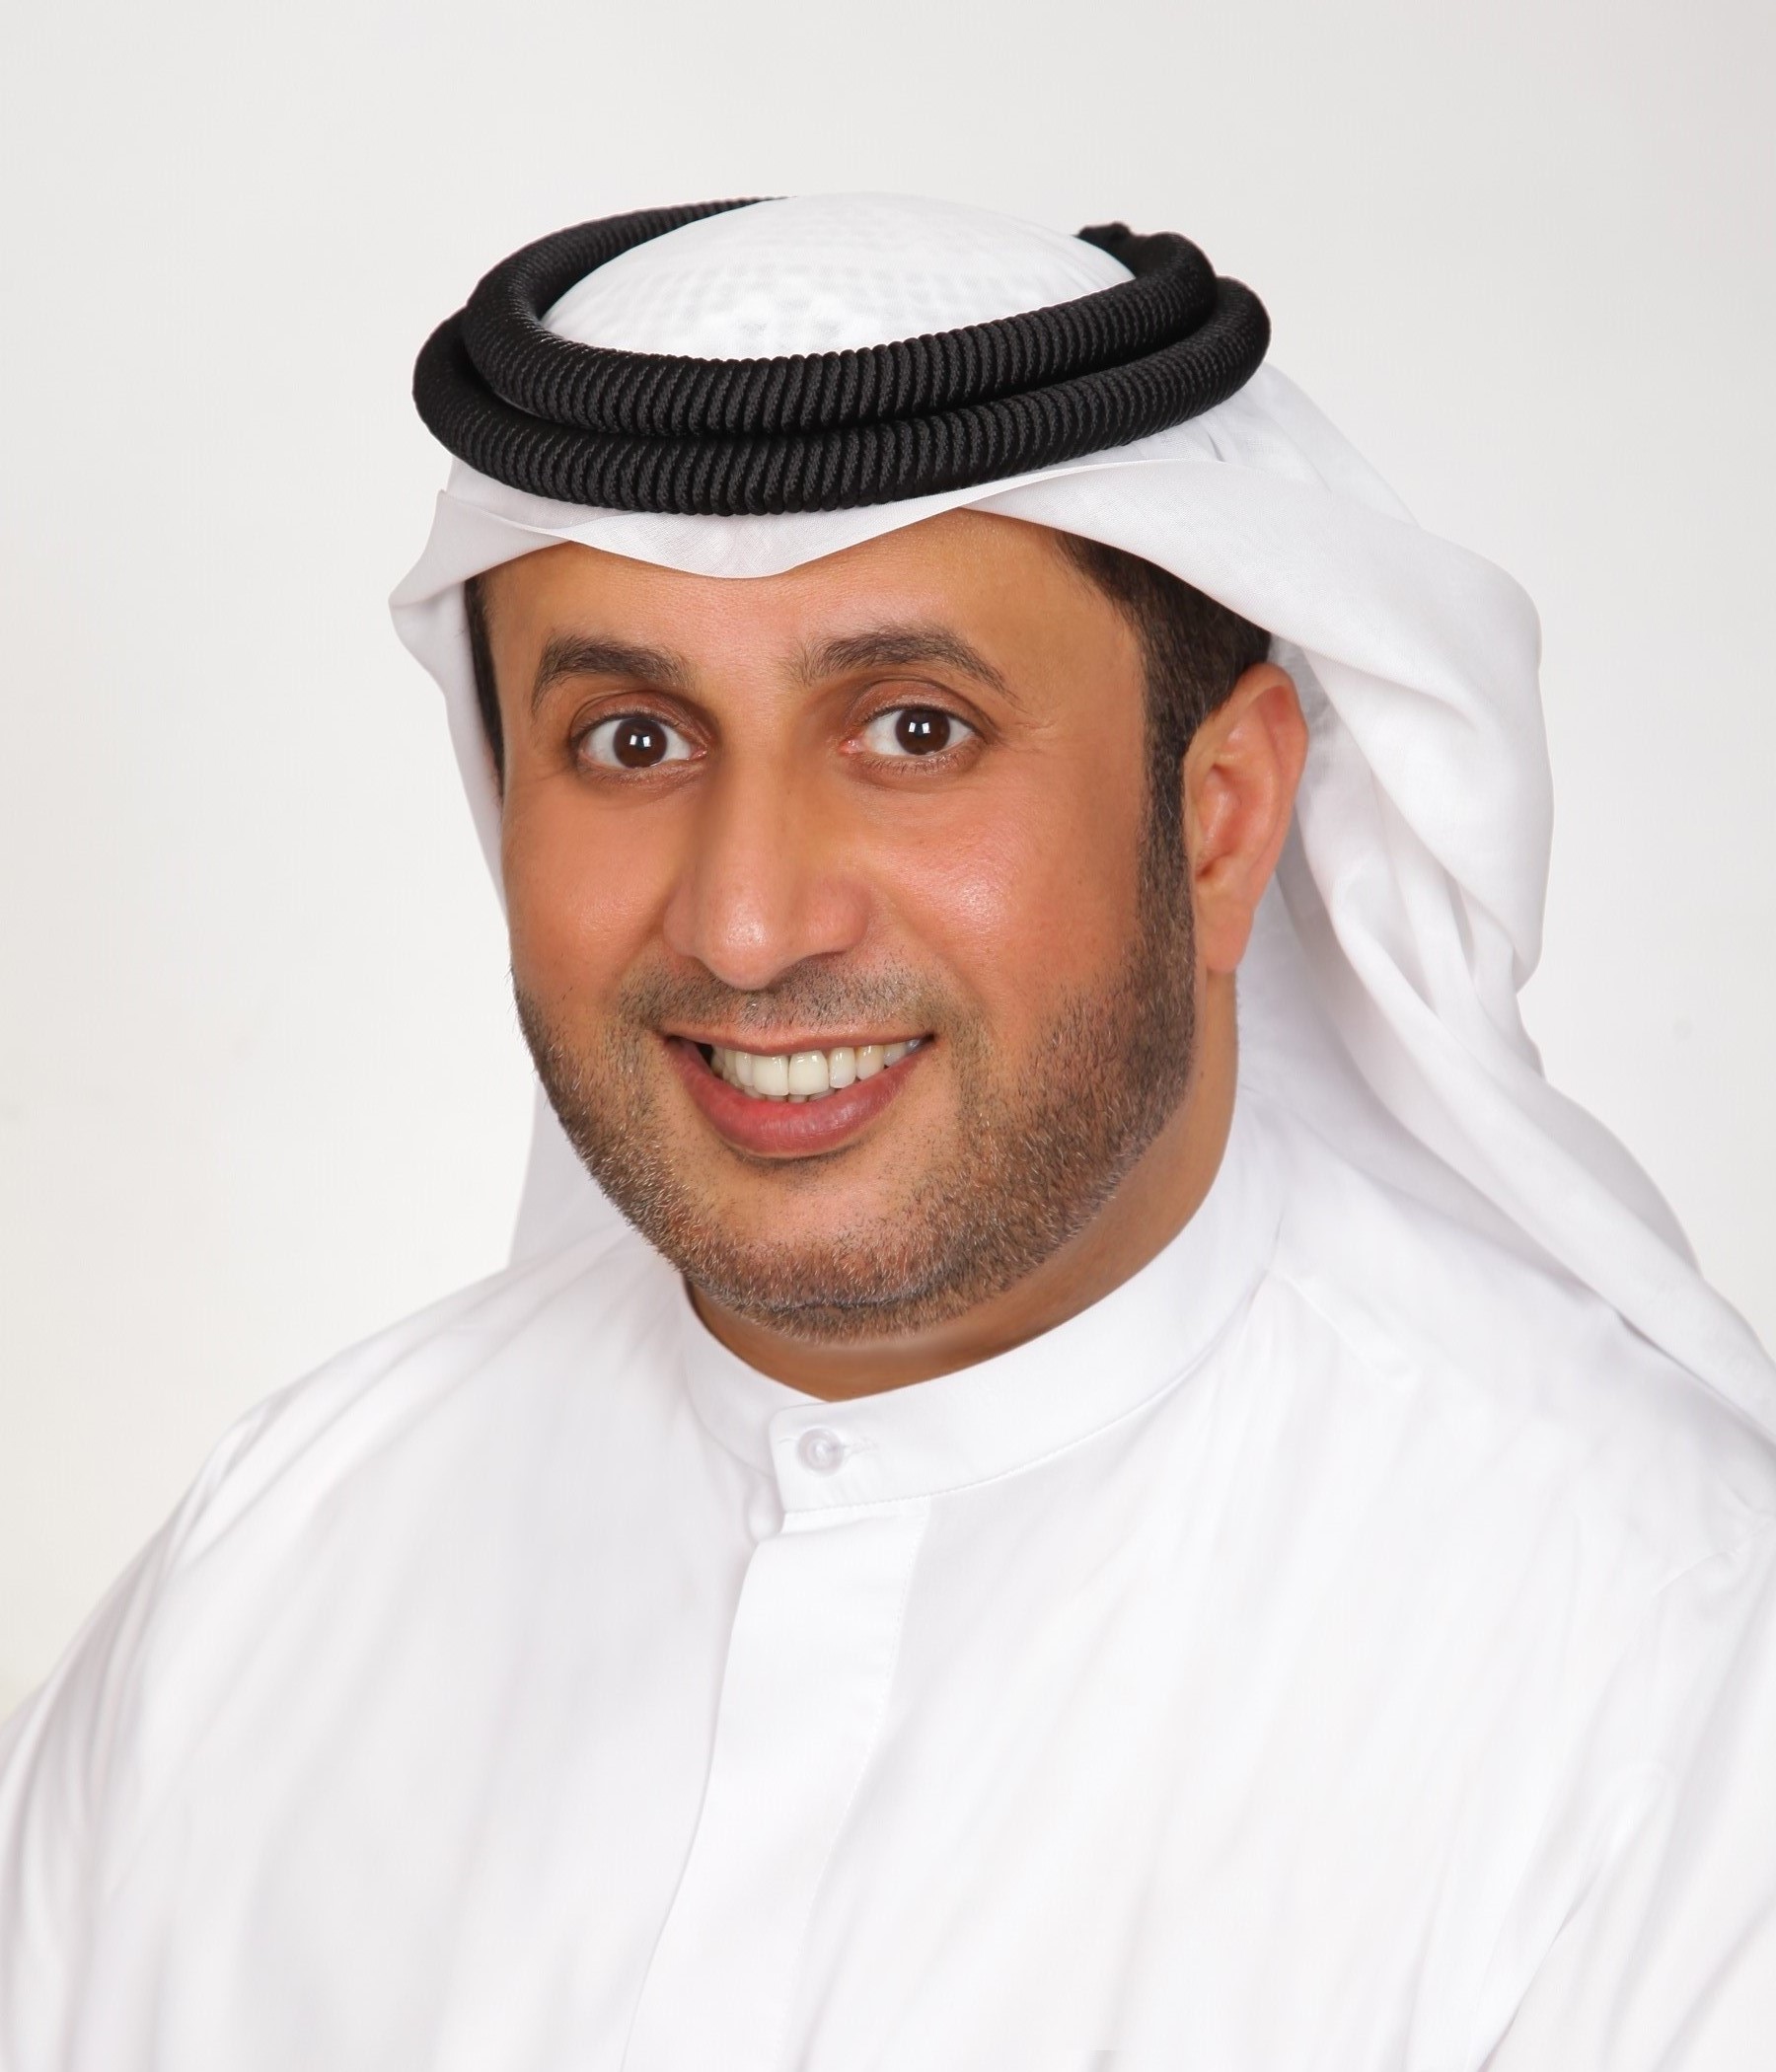  تعليق سعادة أحمد بن شعفار الرئيس التنفيذي لمؤسسة الإمارات لأنظمة التبريد المركزي «إمباور» حول تأجيل تنظيم أكسبو 2020 عاما كاملا